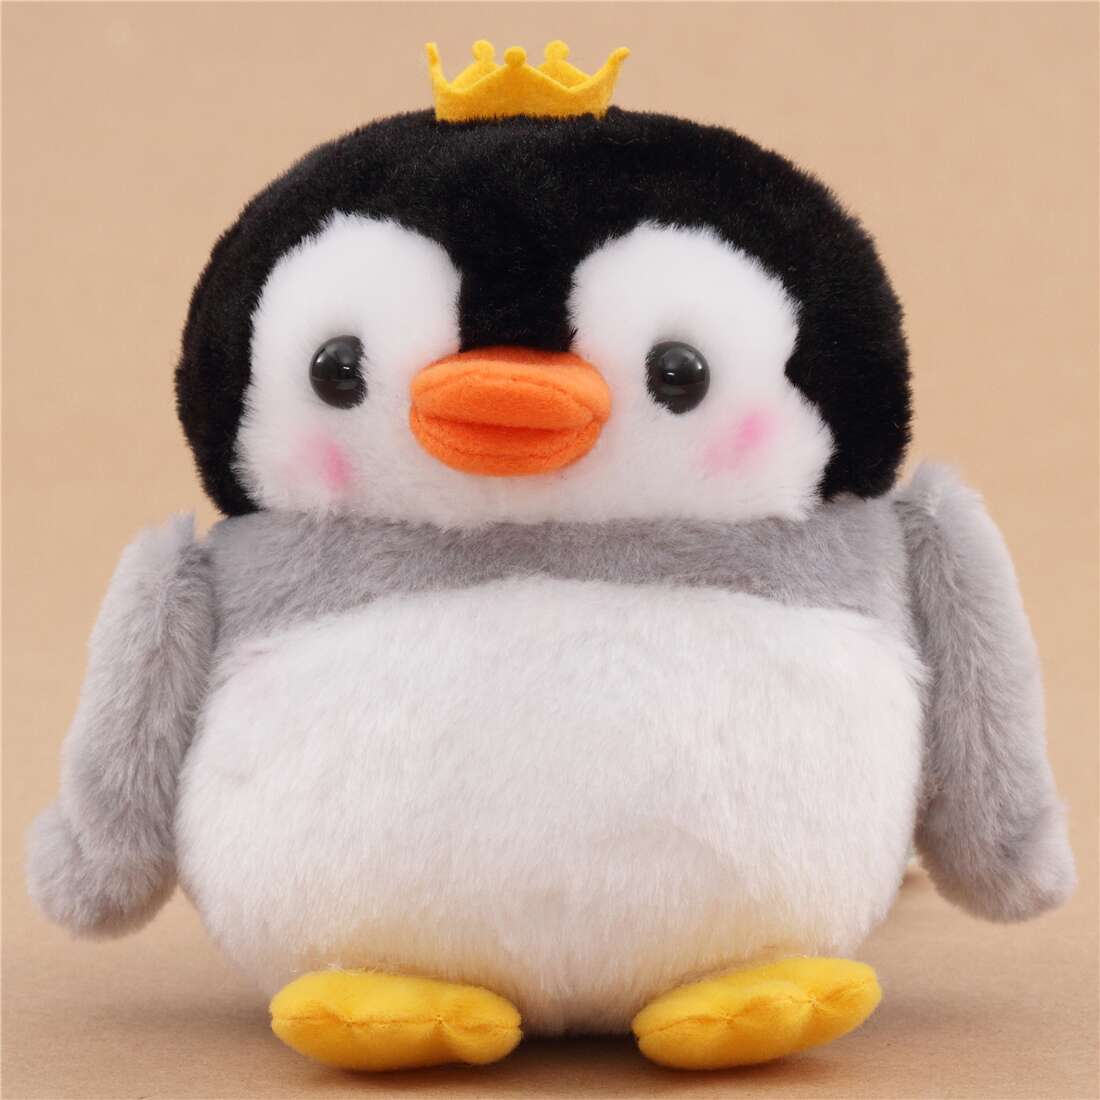 Sanei Japan Tori Dango Humboldt Penguin Plush Doll Stuffed Toy 7cm New 2020 